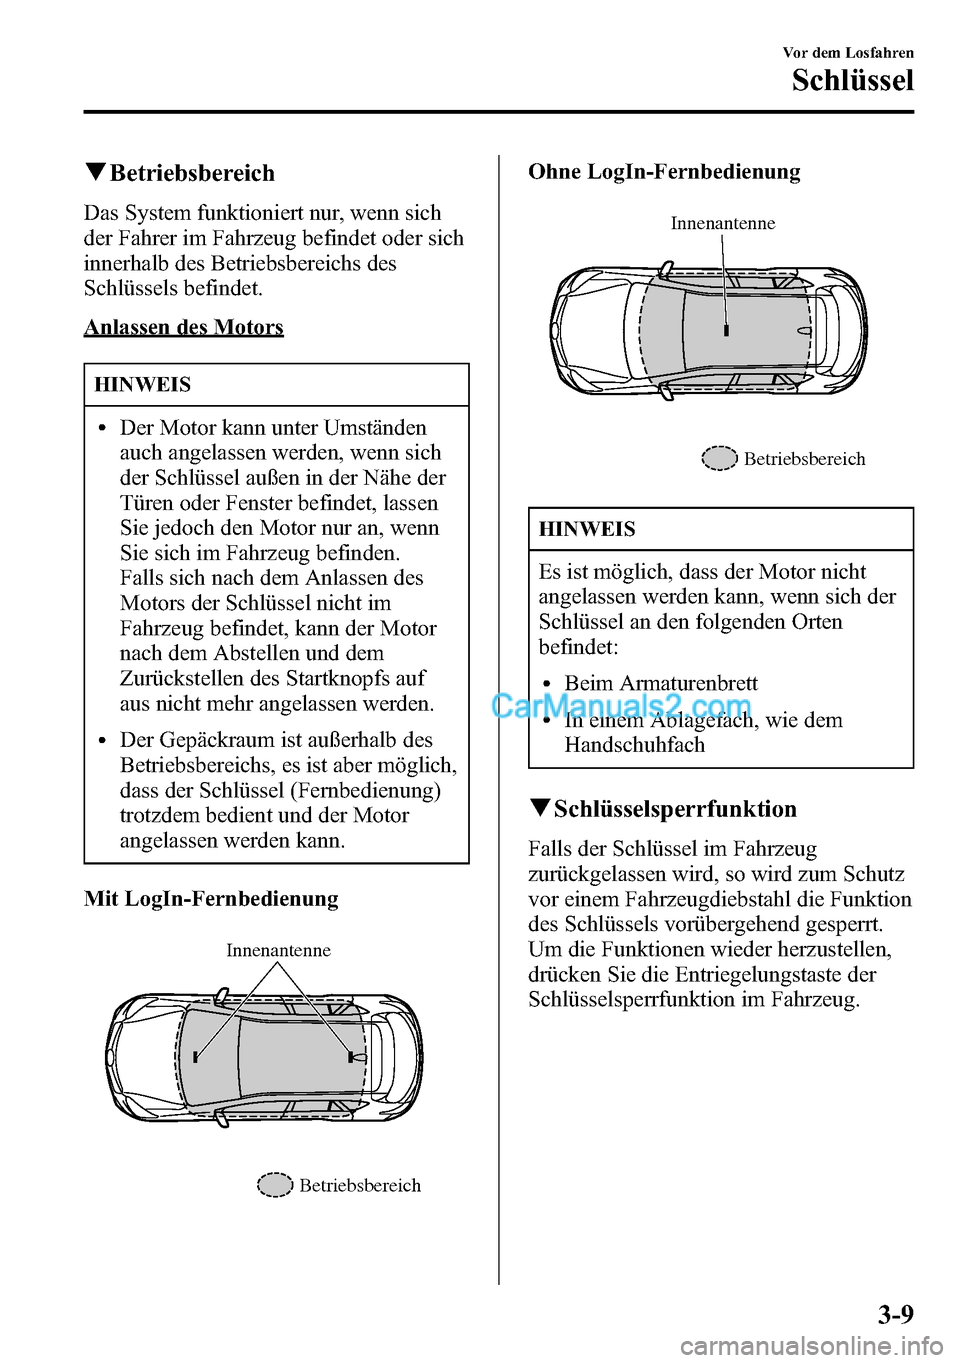 MAZDA MODEL CX-5 2016  Betriebsanleitung (in German) qBetriebsbereich
Das System funktioniert nur, wenn sich
der Fahrer im Fahrzeug befindet oder sich
innerhalb des Betriebsbereichs des
Schlüssels befindet.
Anlassen des Motors
HINWEIS
lDer Motor kann u